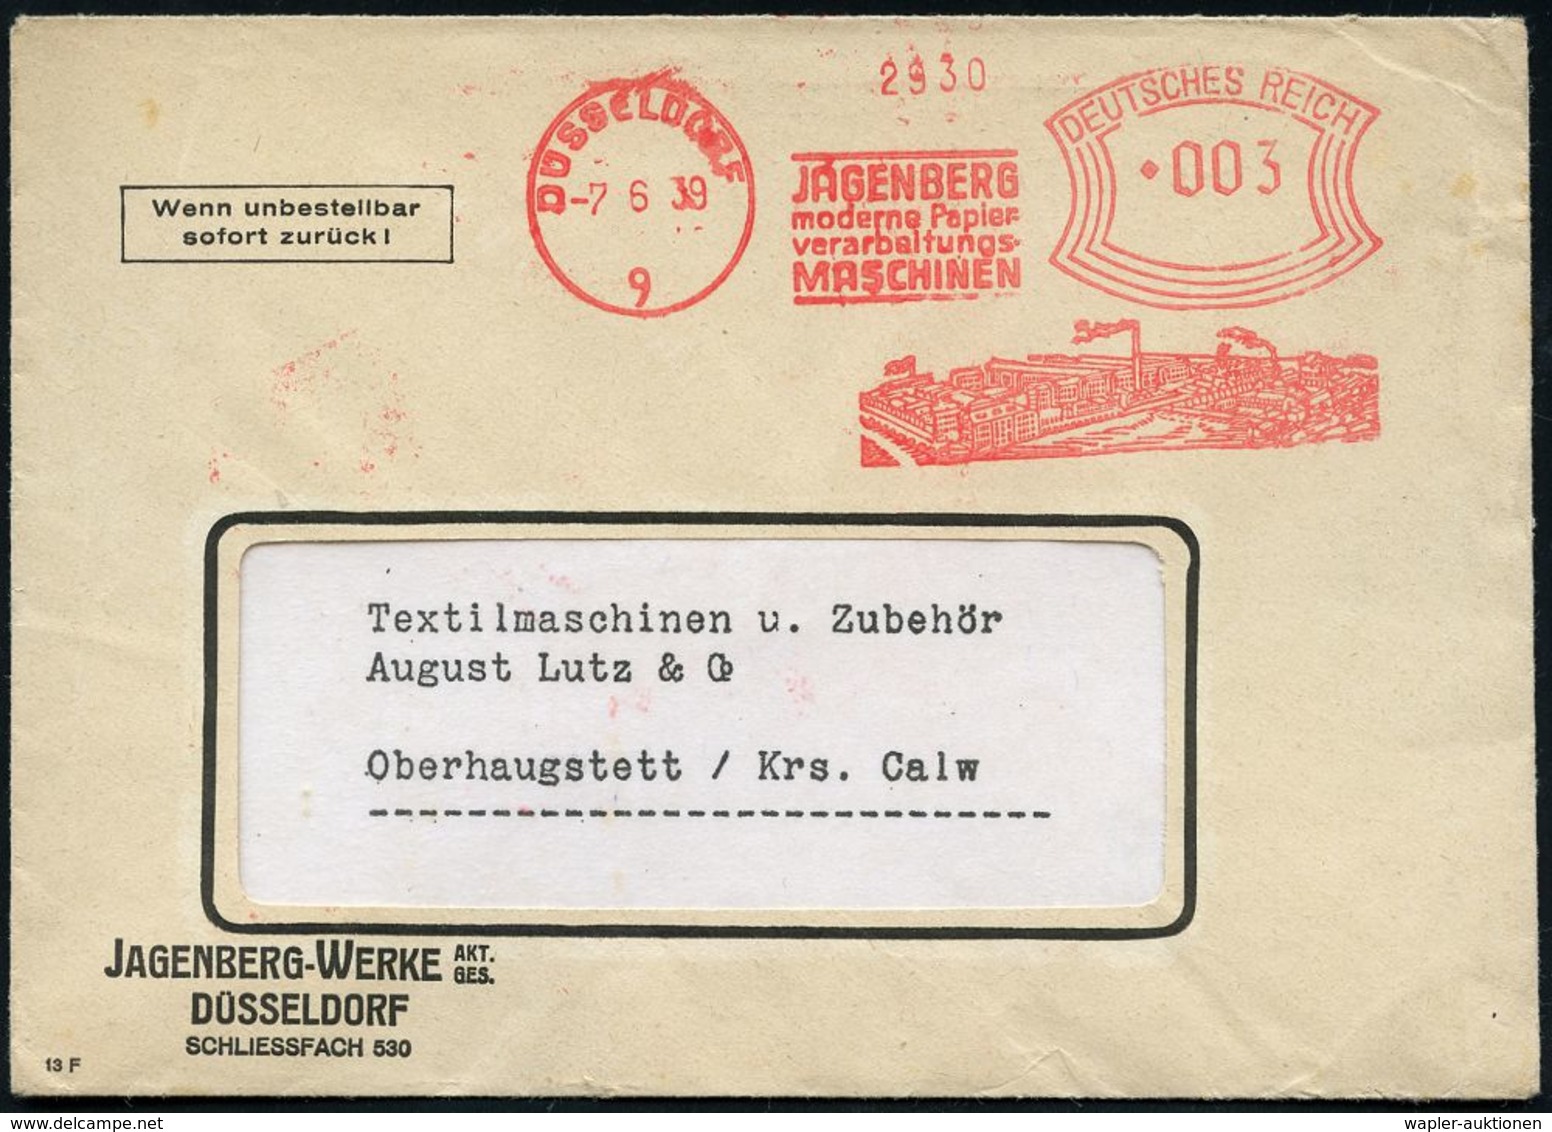 PAPIER / PAPIERVERARBEITUNG / ZELLSTOFF : DÜSSELDORF/ 9/ JAGENBERG/ Moderne Papier-/ Verarbeitungs-/ MASCHINEN 1939 (7.6 - Non Classés